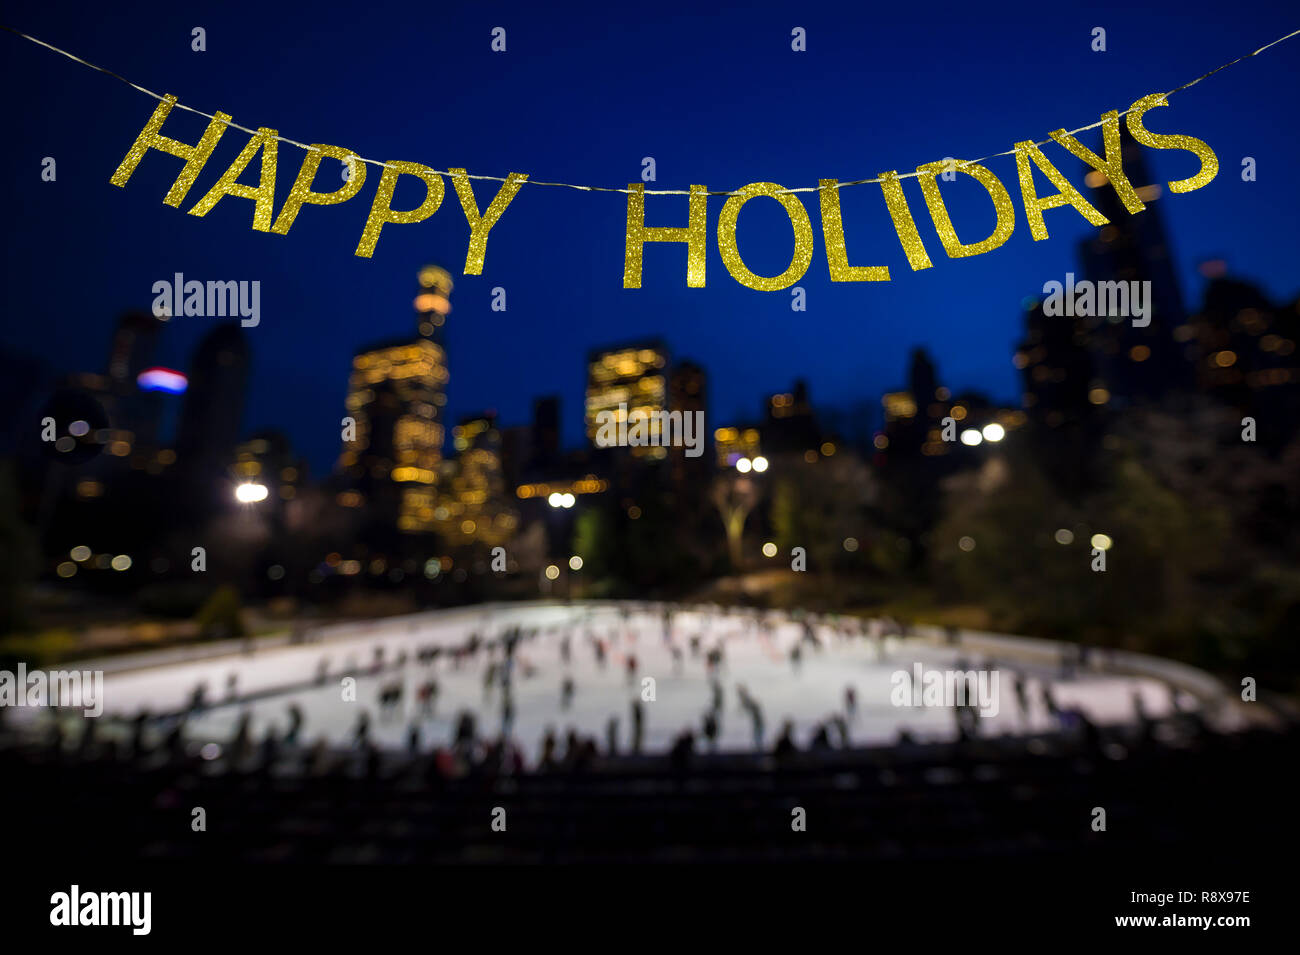 Vacanze felici messaggio in oro lucido lettere appeso nel cielo invernale al di sopra di un occupato il pattinaggio su ghiaccio circondato da scintillanti luci della città Foto Stock